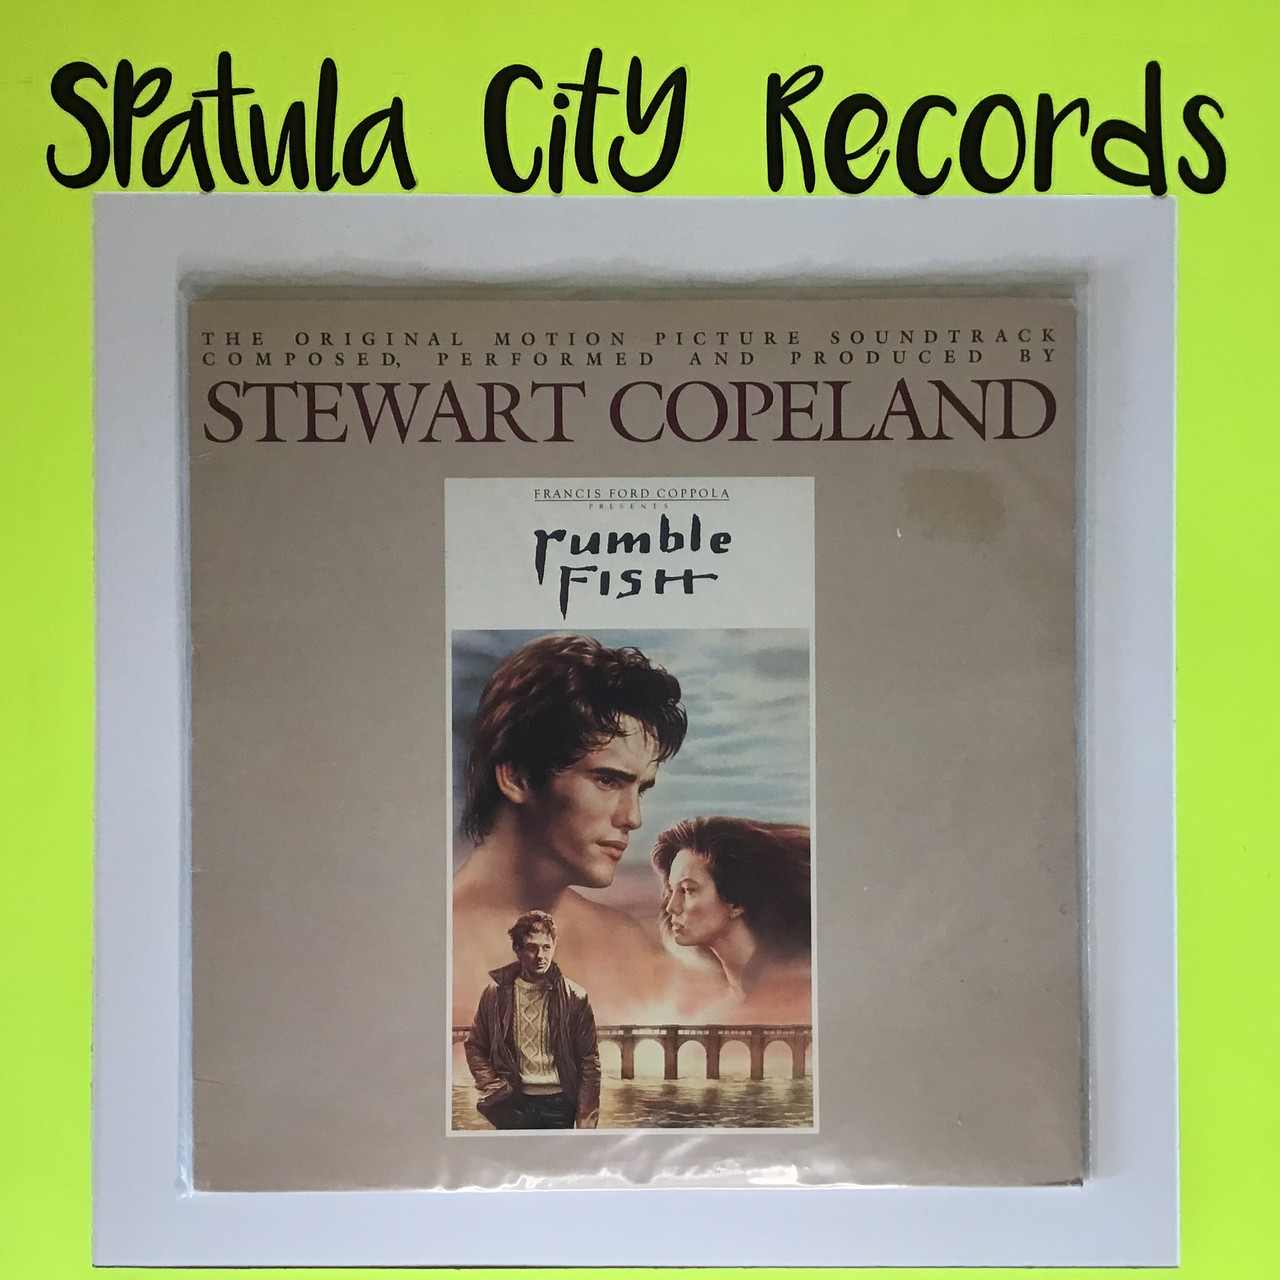 Stewart Copeland - Rumble Fish (Original Motion Picture Soundtrack) - vinyl record LP